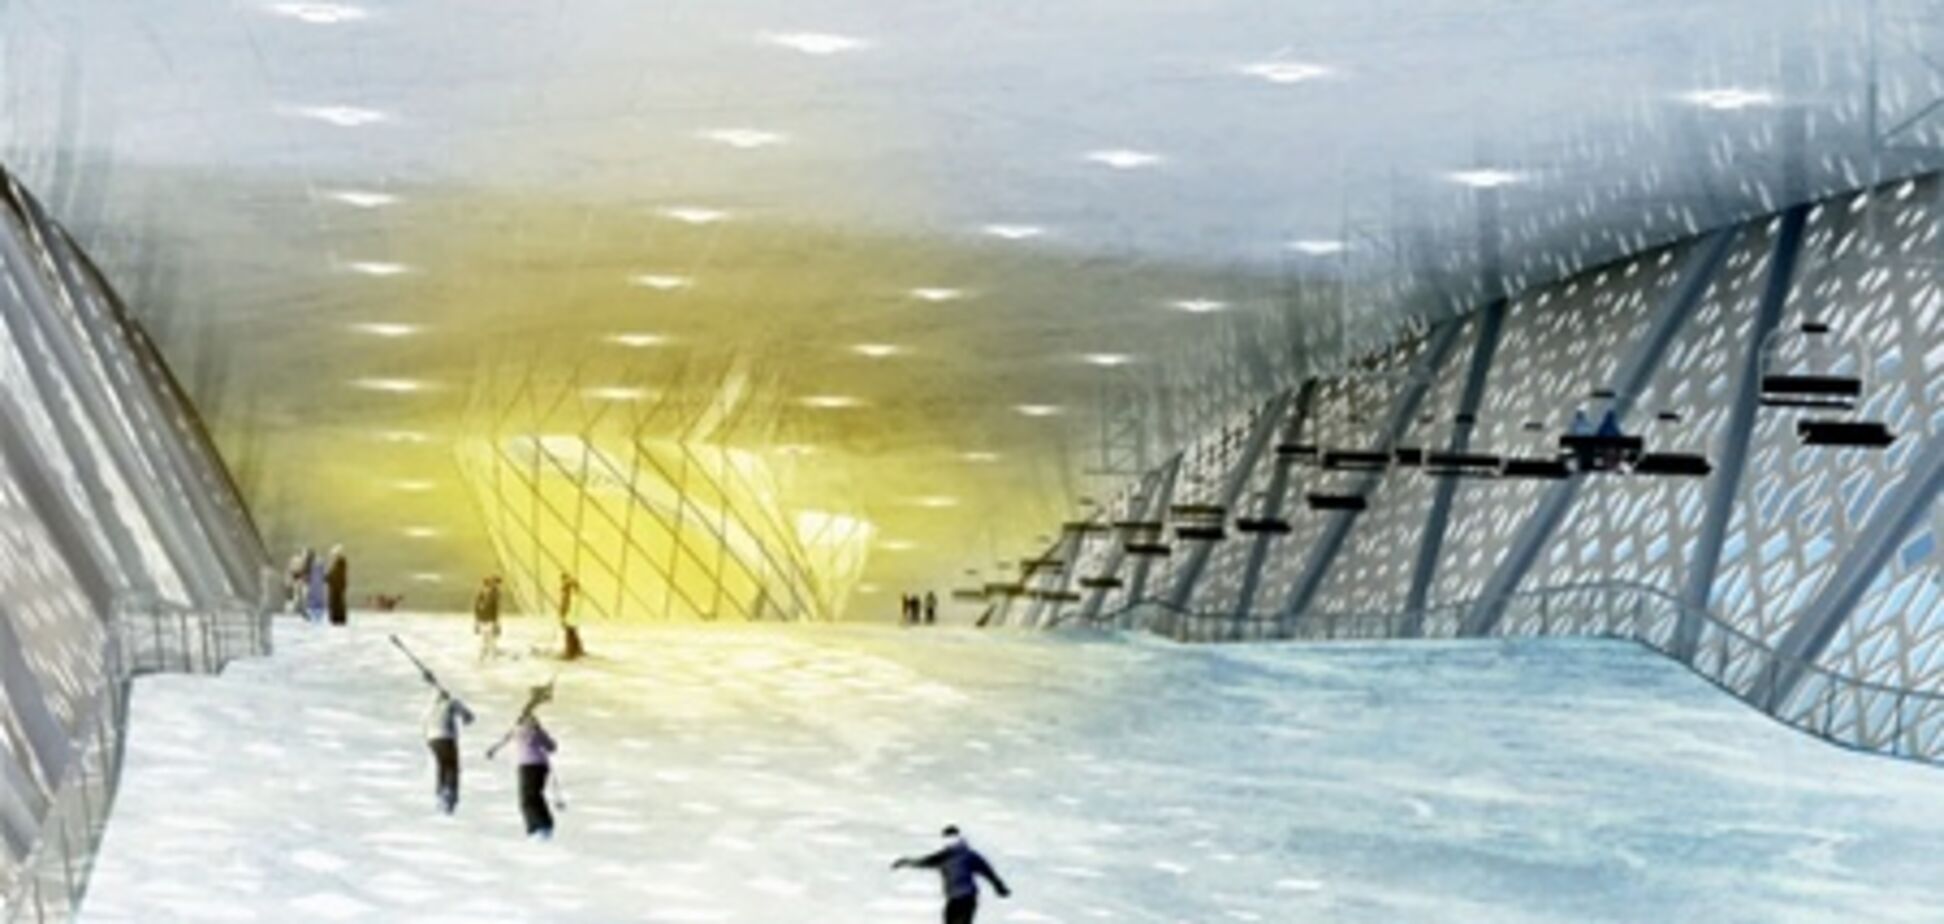 В Дании будет построен крытый горнолыжный центр